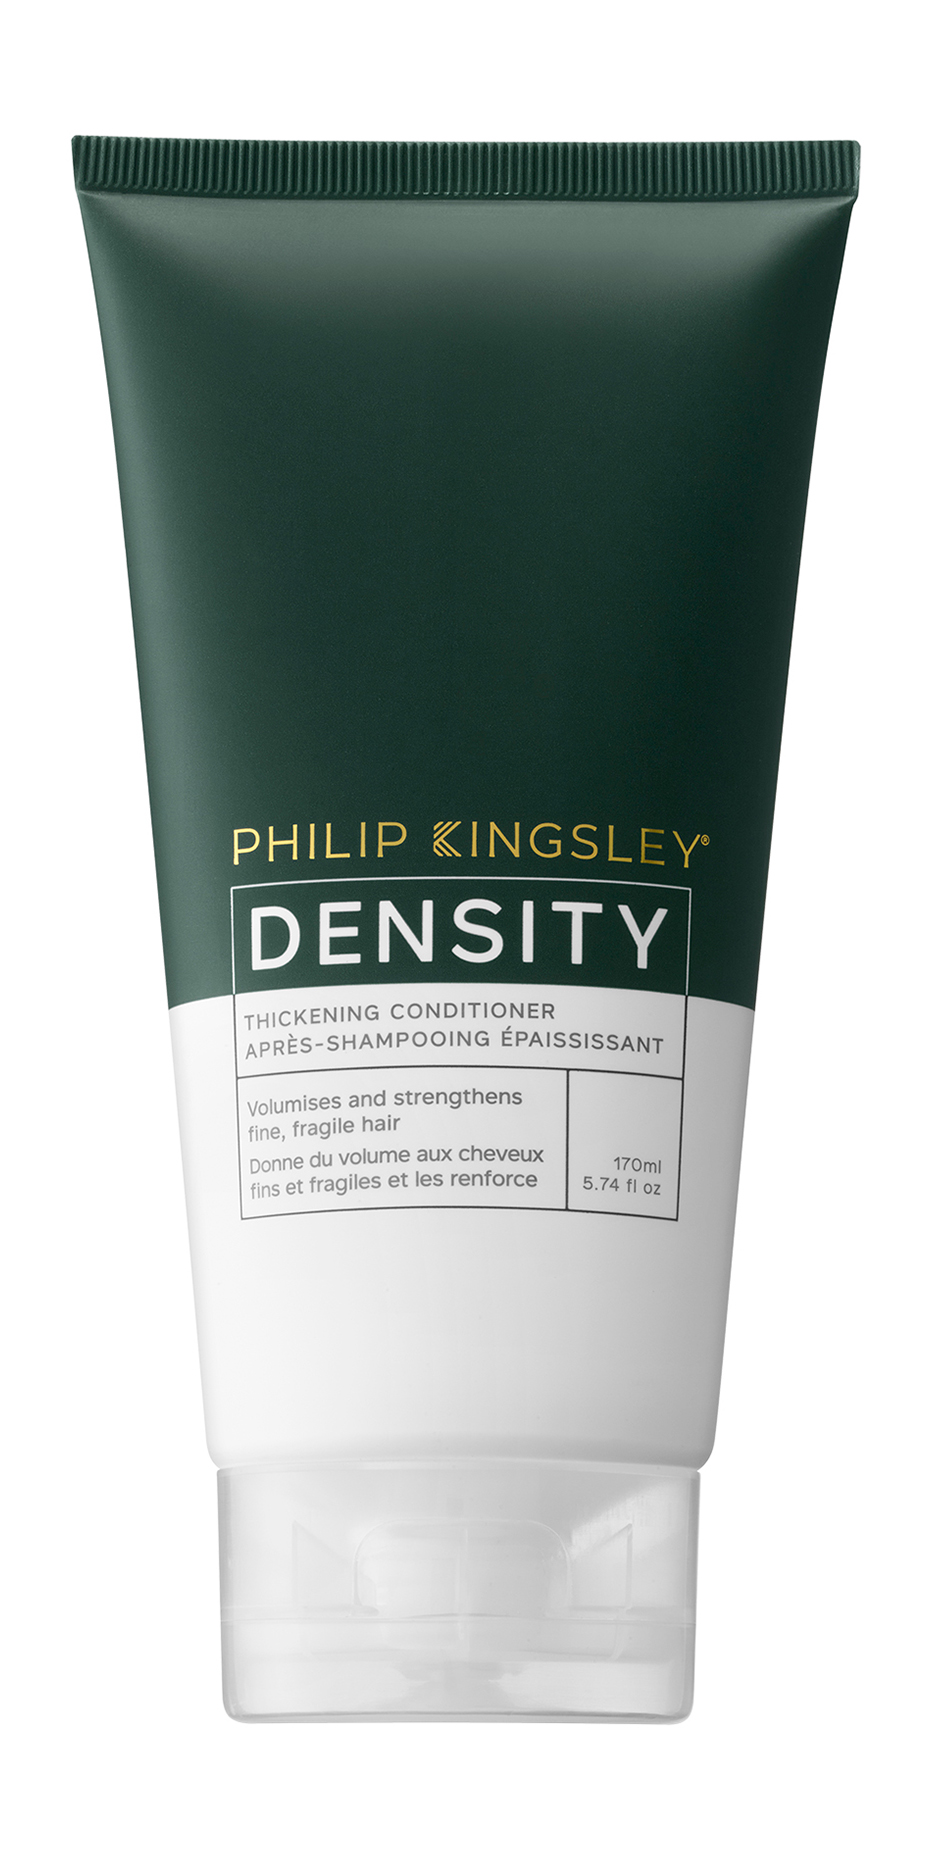 Кондиционер для волос Philip Kingsley Density Thickening Conditioner, 170 мл кондиционер для волос philip kingsley density thickening conditioner 170 мл